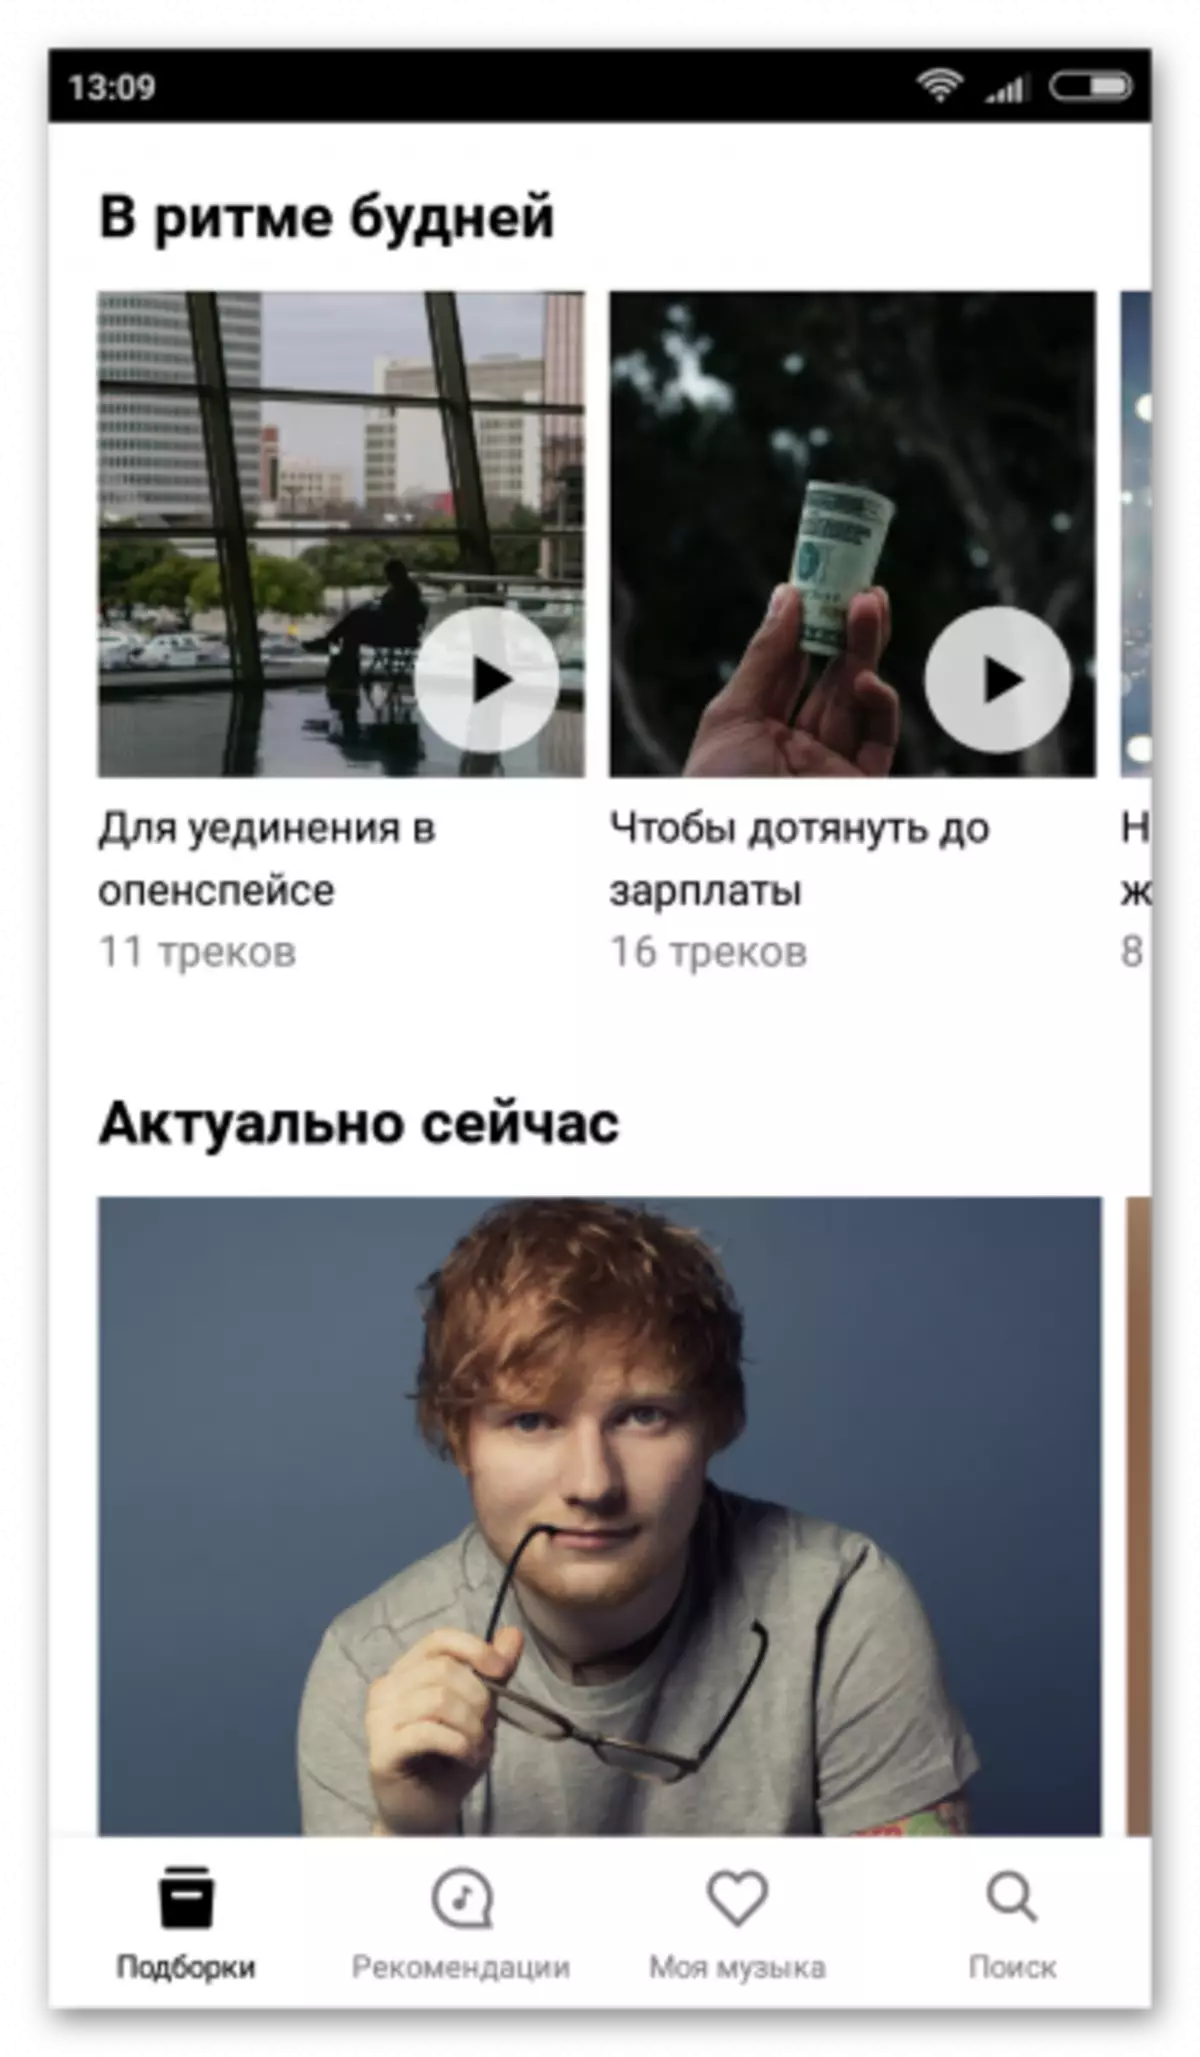 Yandex.Music üzerinde android